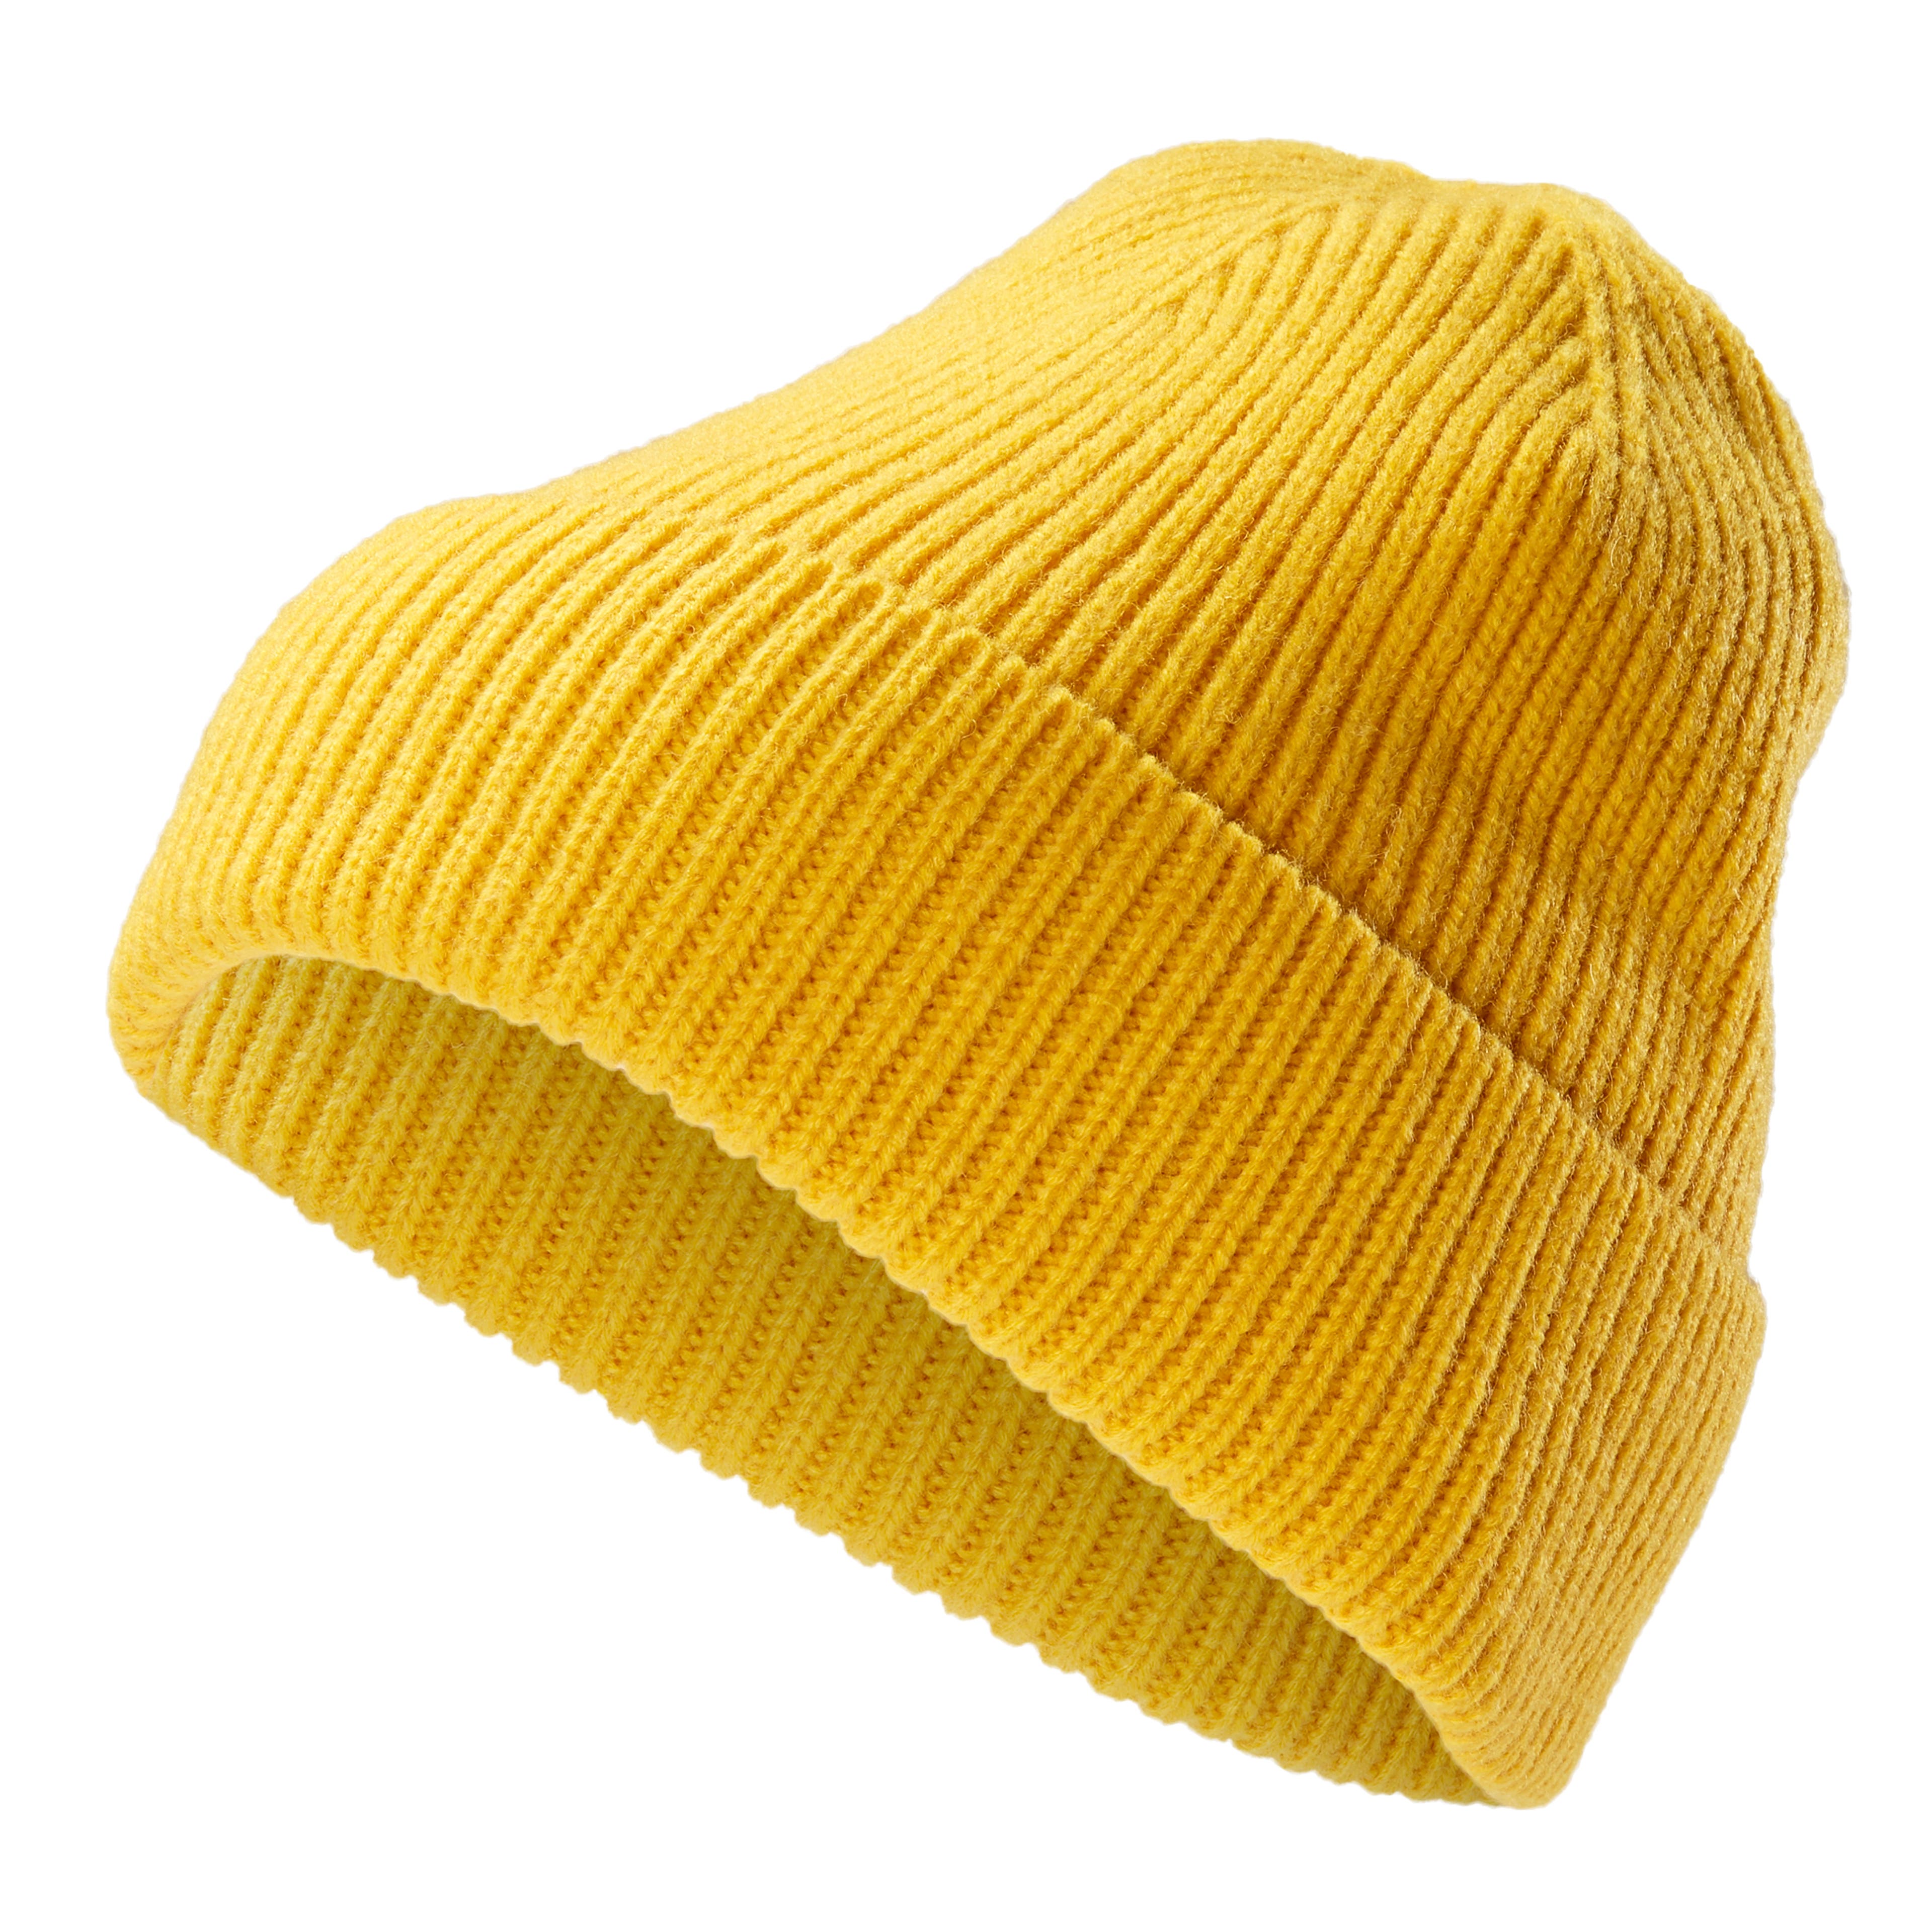 Bonnet jaune Felic Montagna